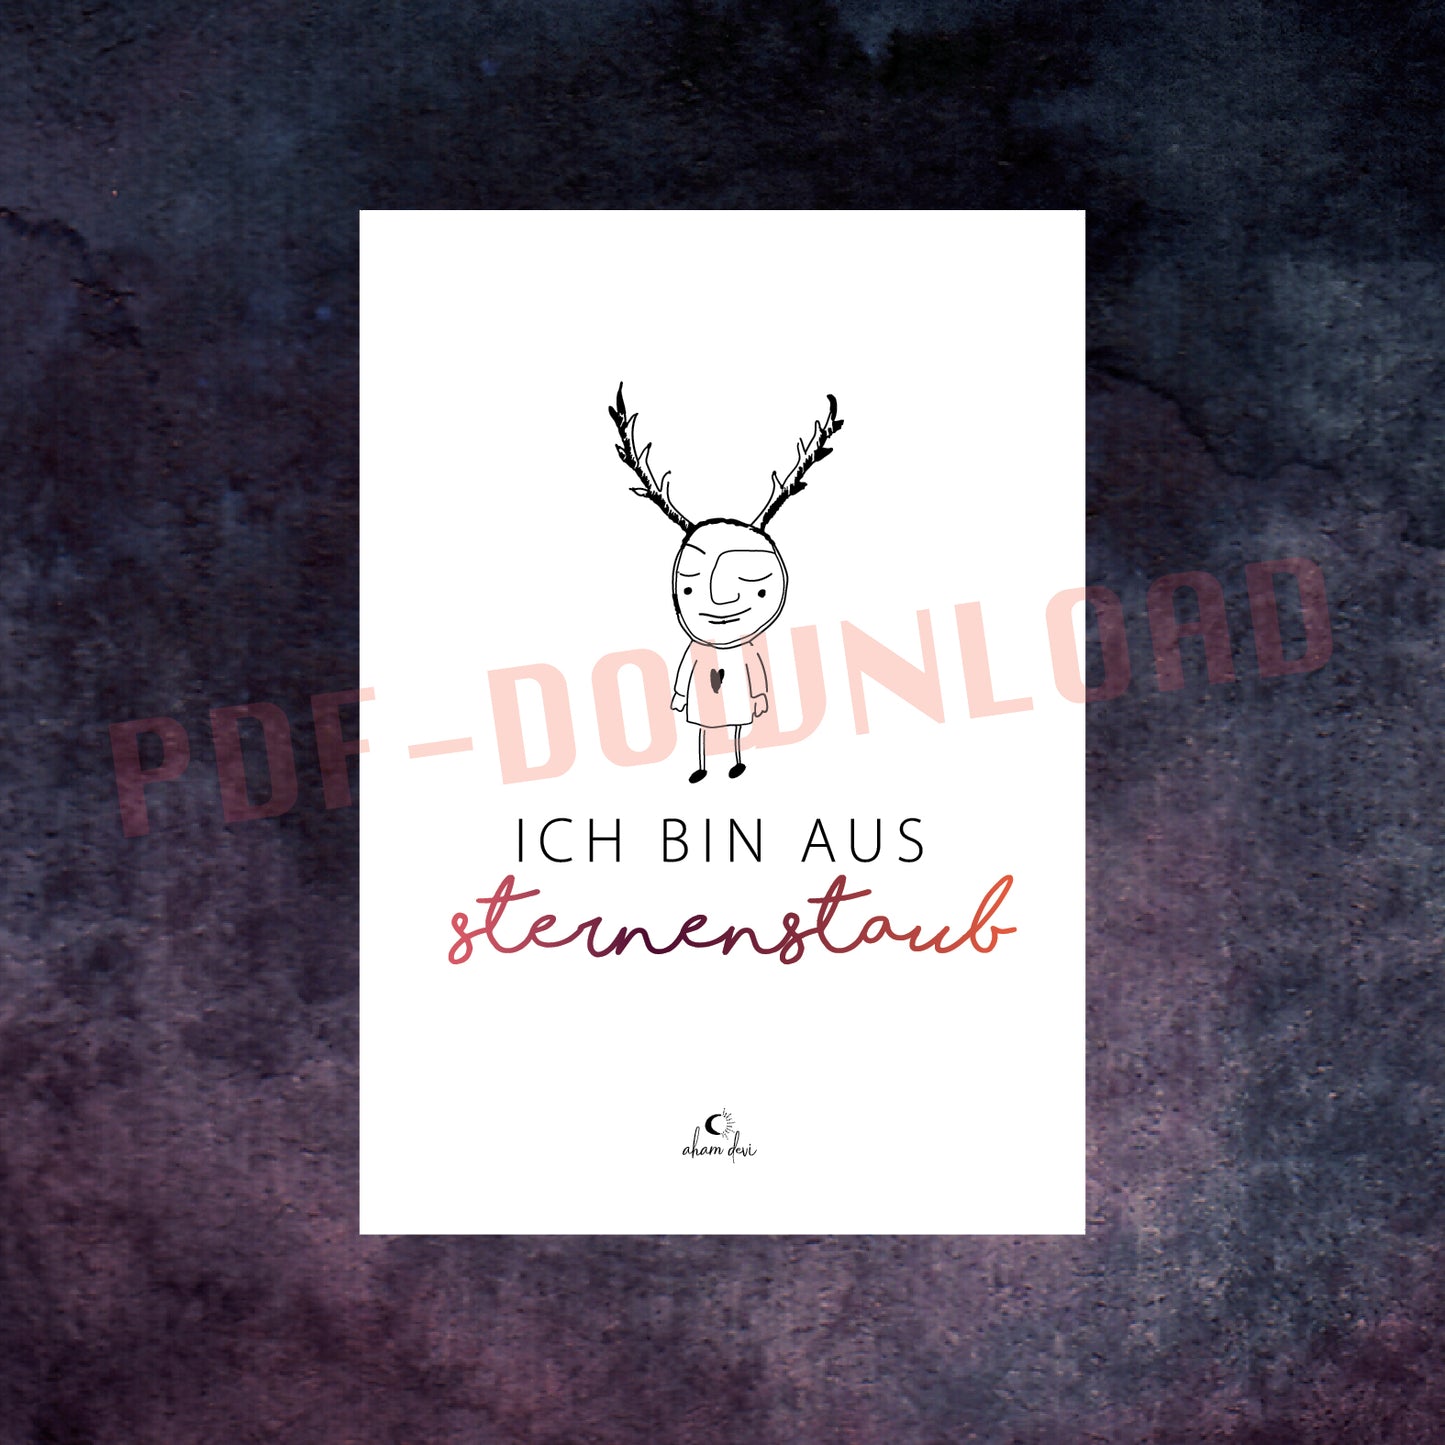 PDF Download "Sternenstaub"